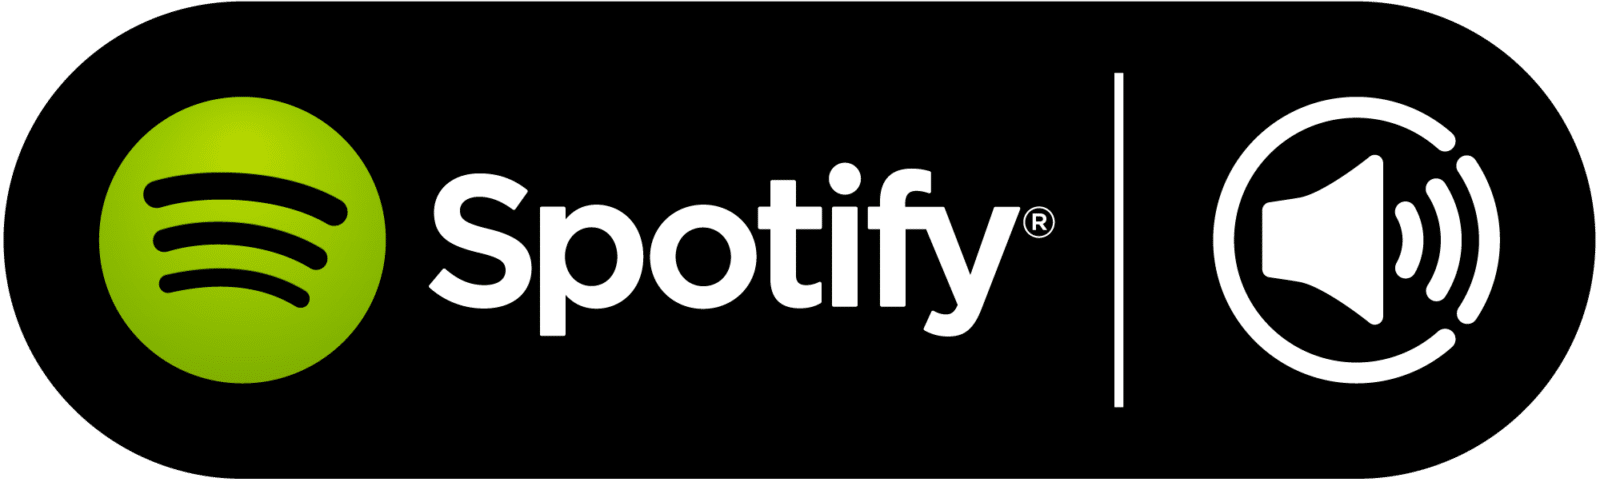 Spotify spotify connect Spotify va lancer une nouvelle version gratuite ! annonce